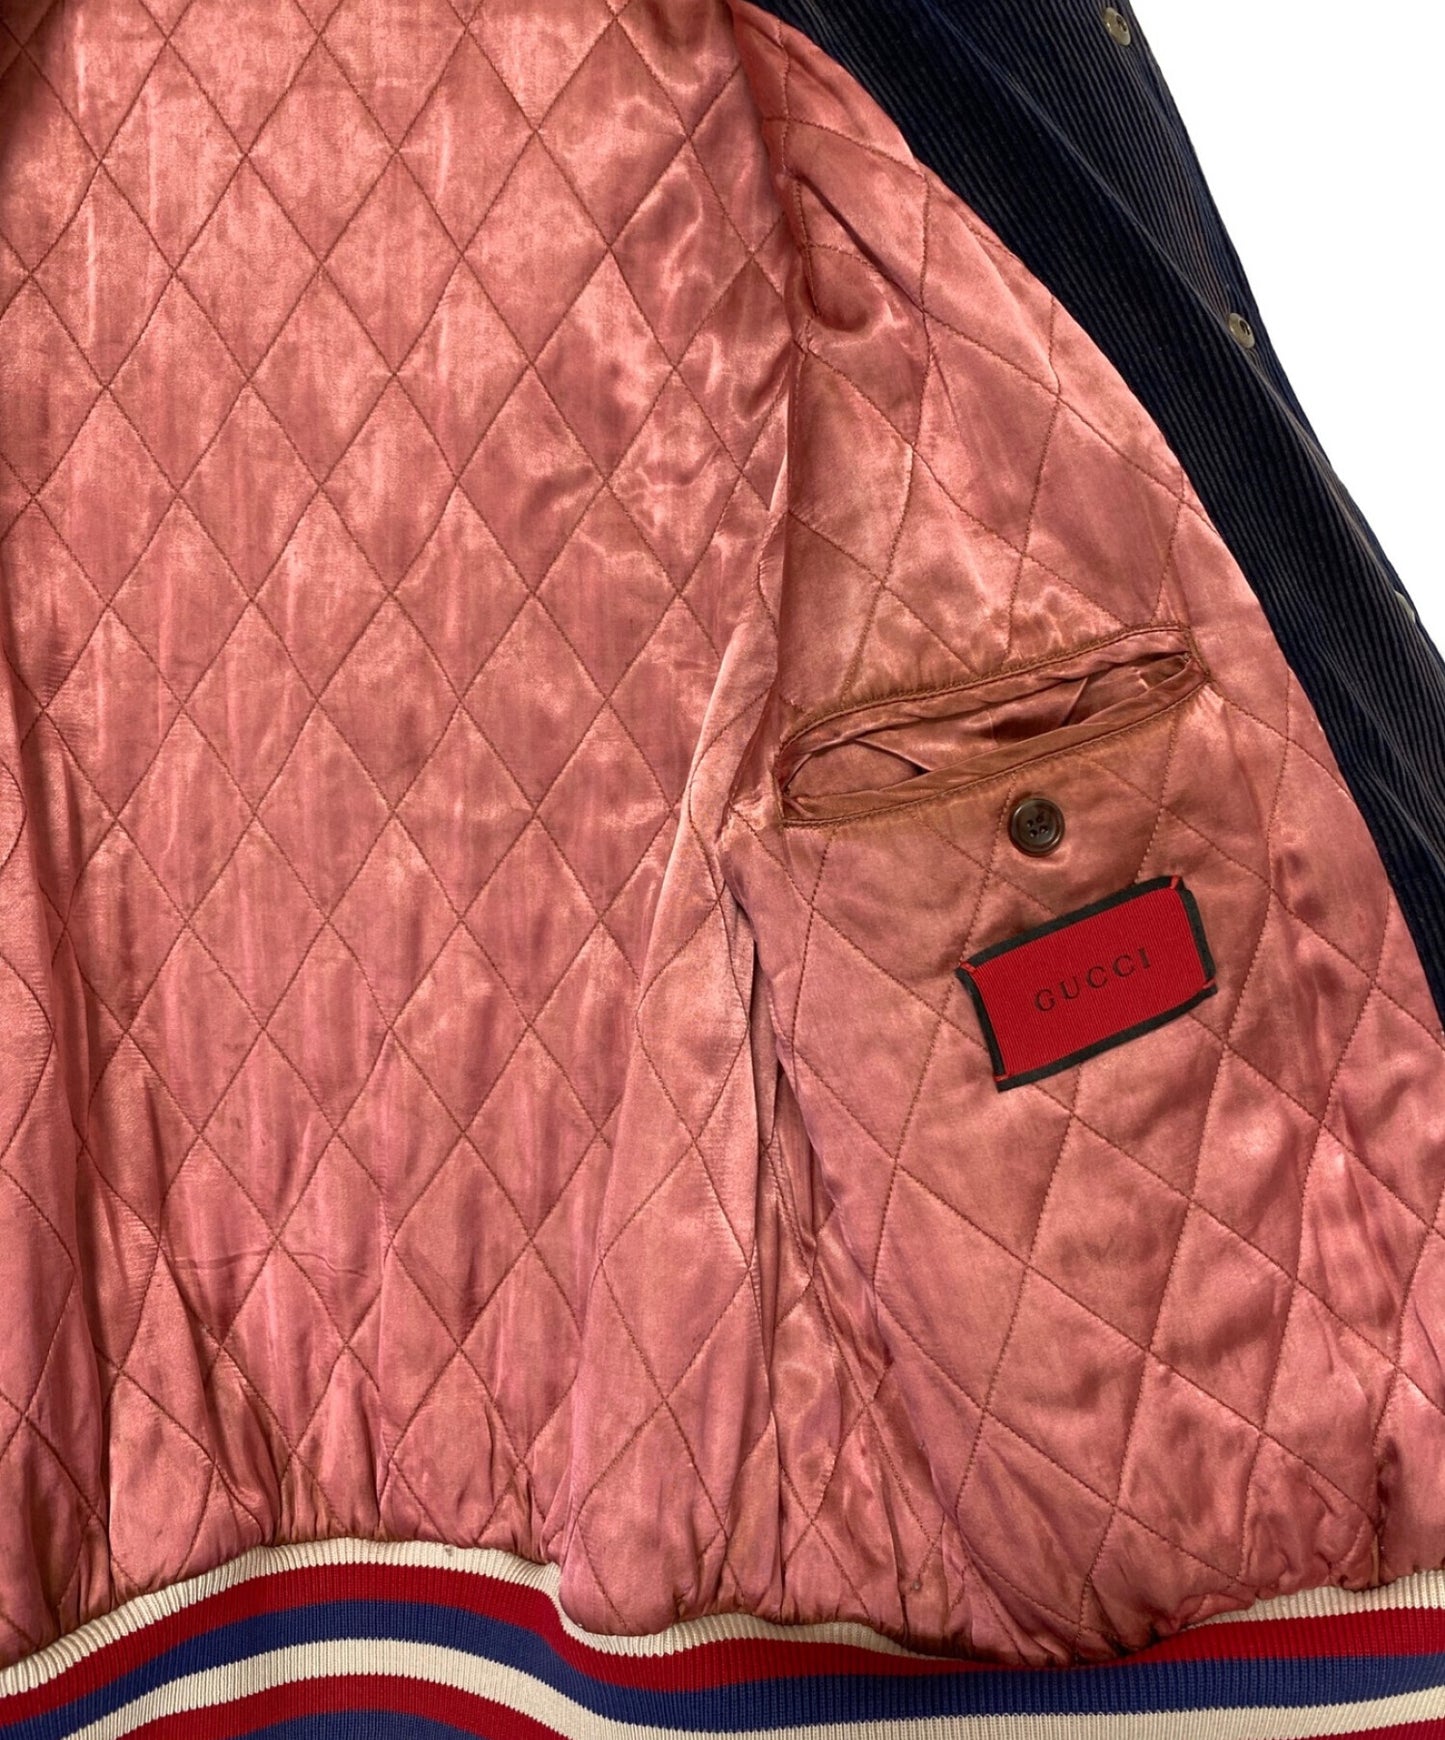 구찌 구찌 DSM 특수 세척 된 벨벳 오버 버튼 폭격기 재킷 (구찌 도버 스트리트 마켓 스페셜 세탁 된 벨벳 버튼 폭격기 재킷) 475032-xr563